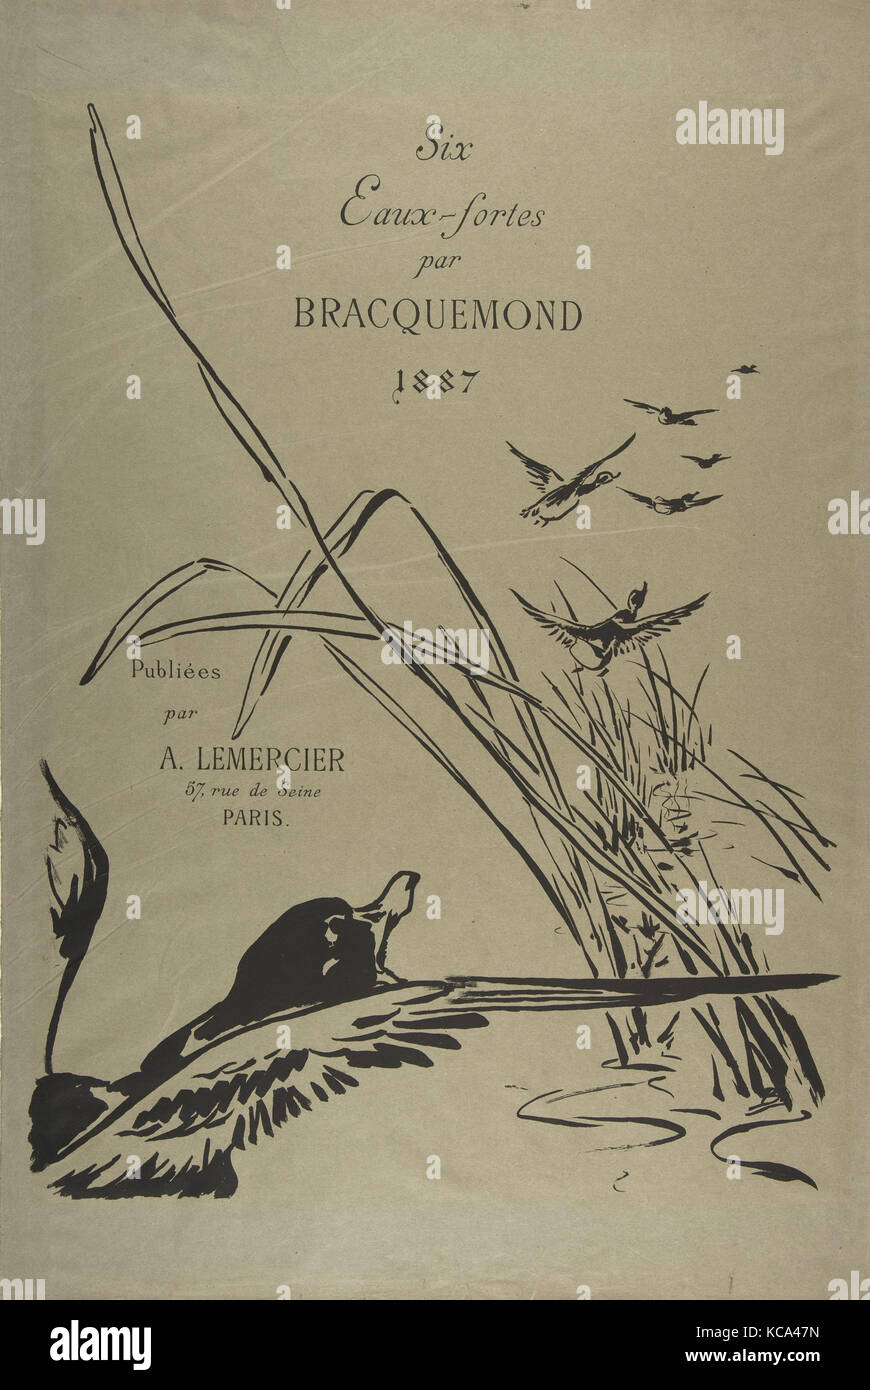 Titelseite für sechs Veröffentlicht Radierungen, Félix Bracquemond, 1887 Stockfoto